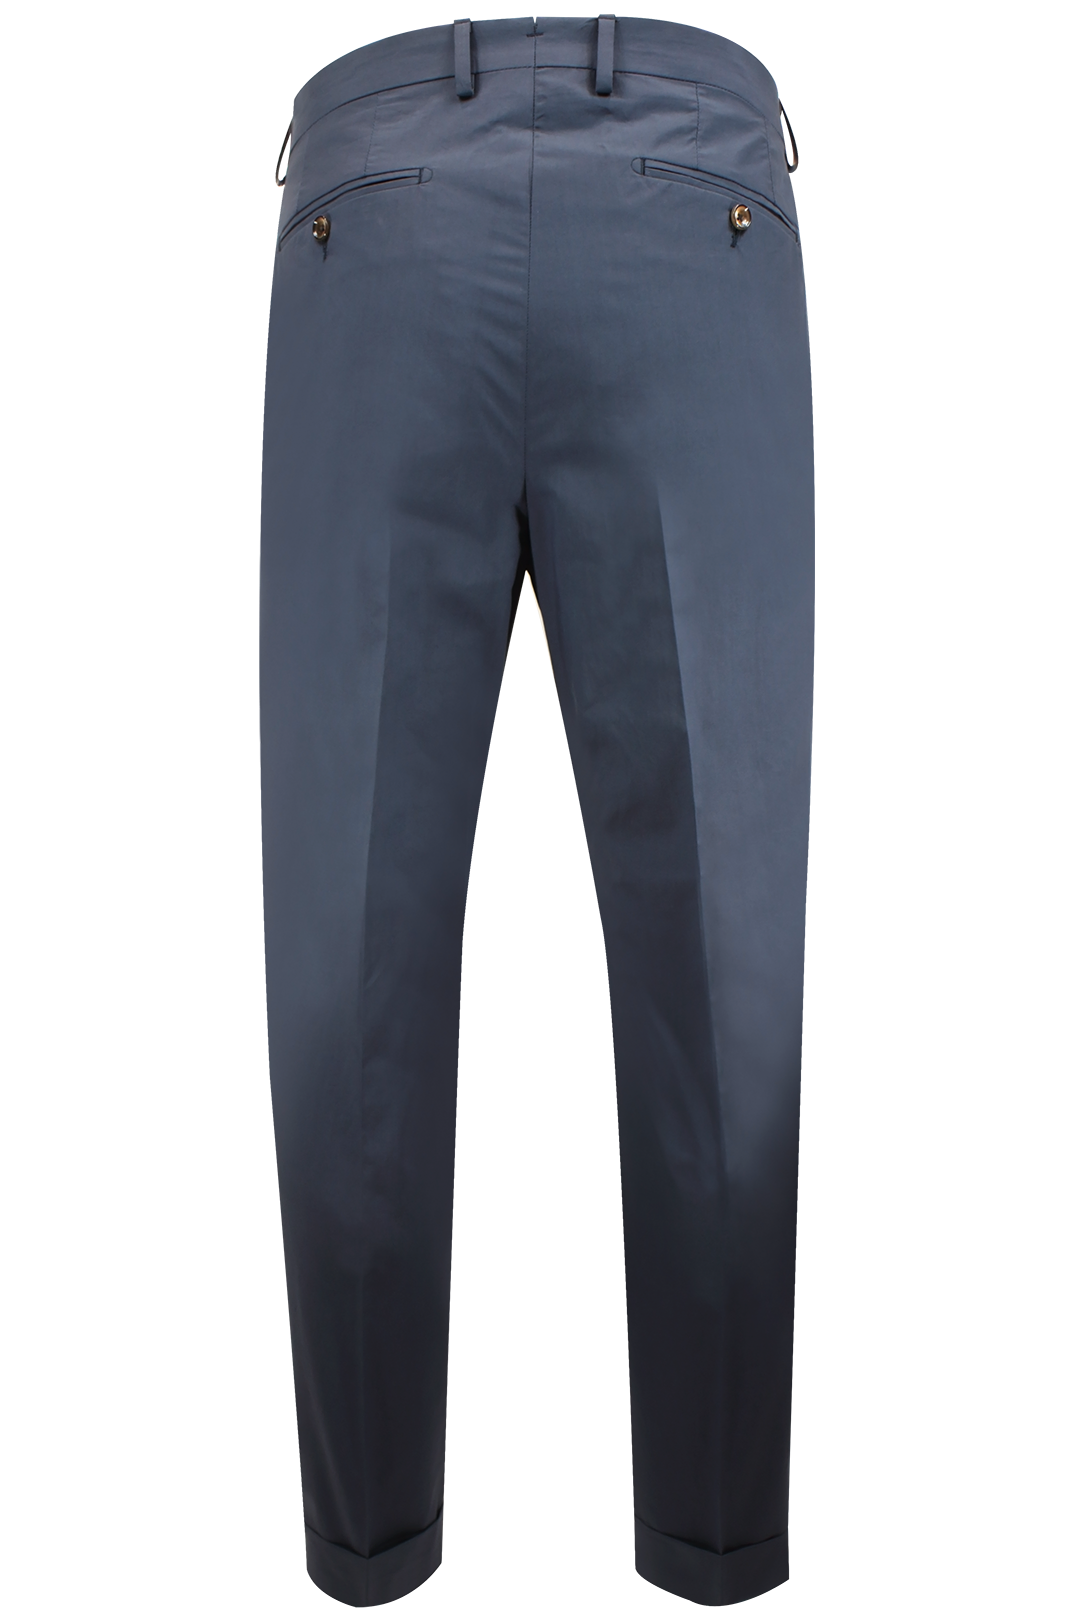 Pantalone con due pinces in cotone blu retro